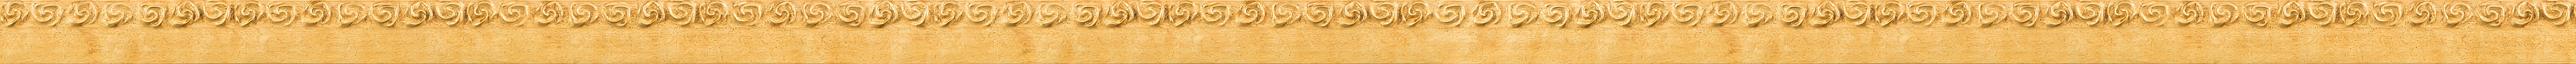 Μοντέρνα κορνίζα με φύλλο χρυσού frame